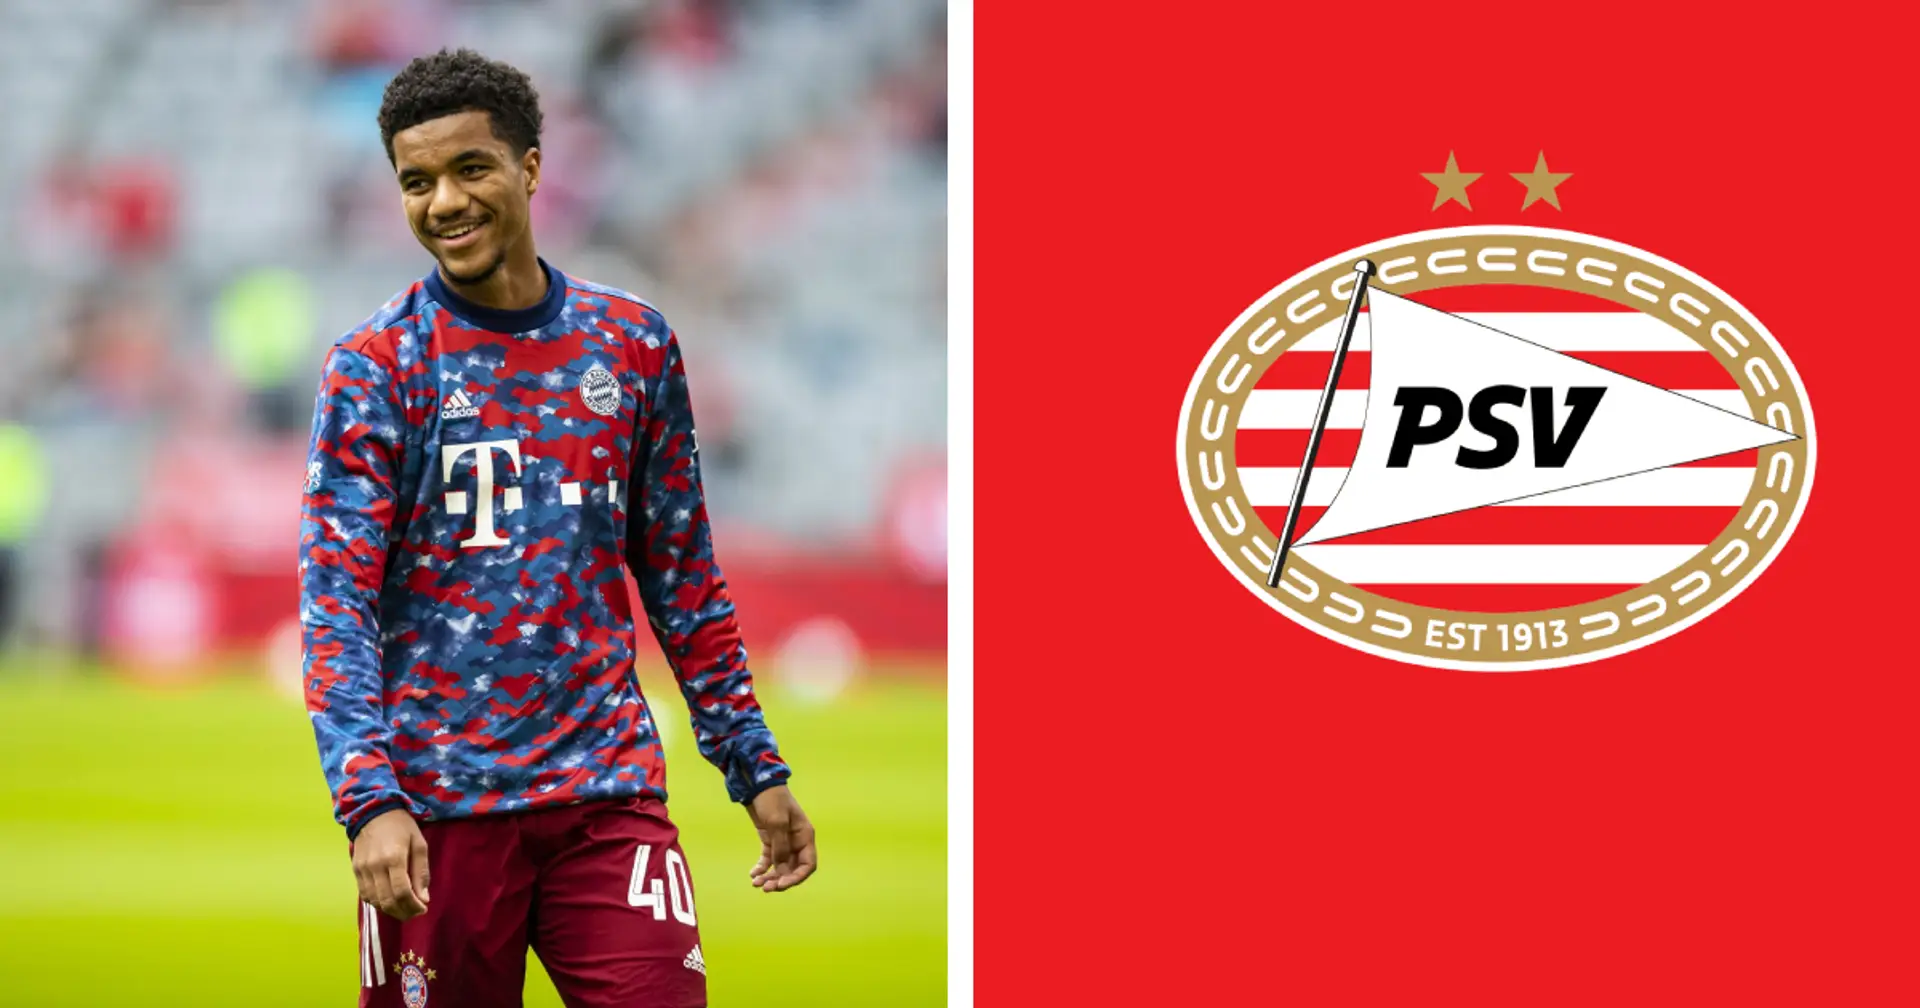  FC Bayern: Talentverkauf oder verpasste Chance? Offensivspieler Malik Tillman wechselt nach PSV Eindhoven